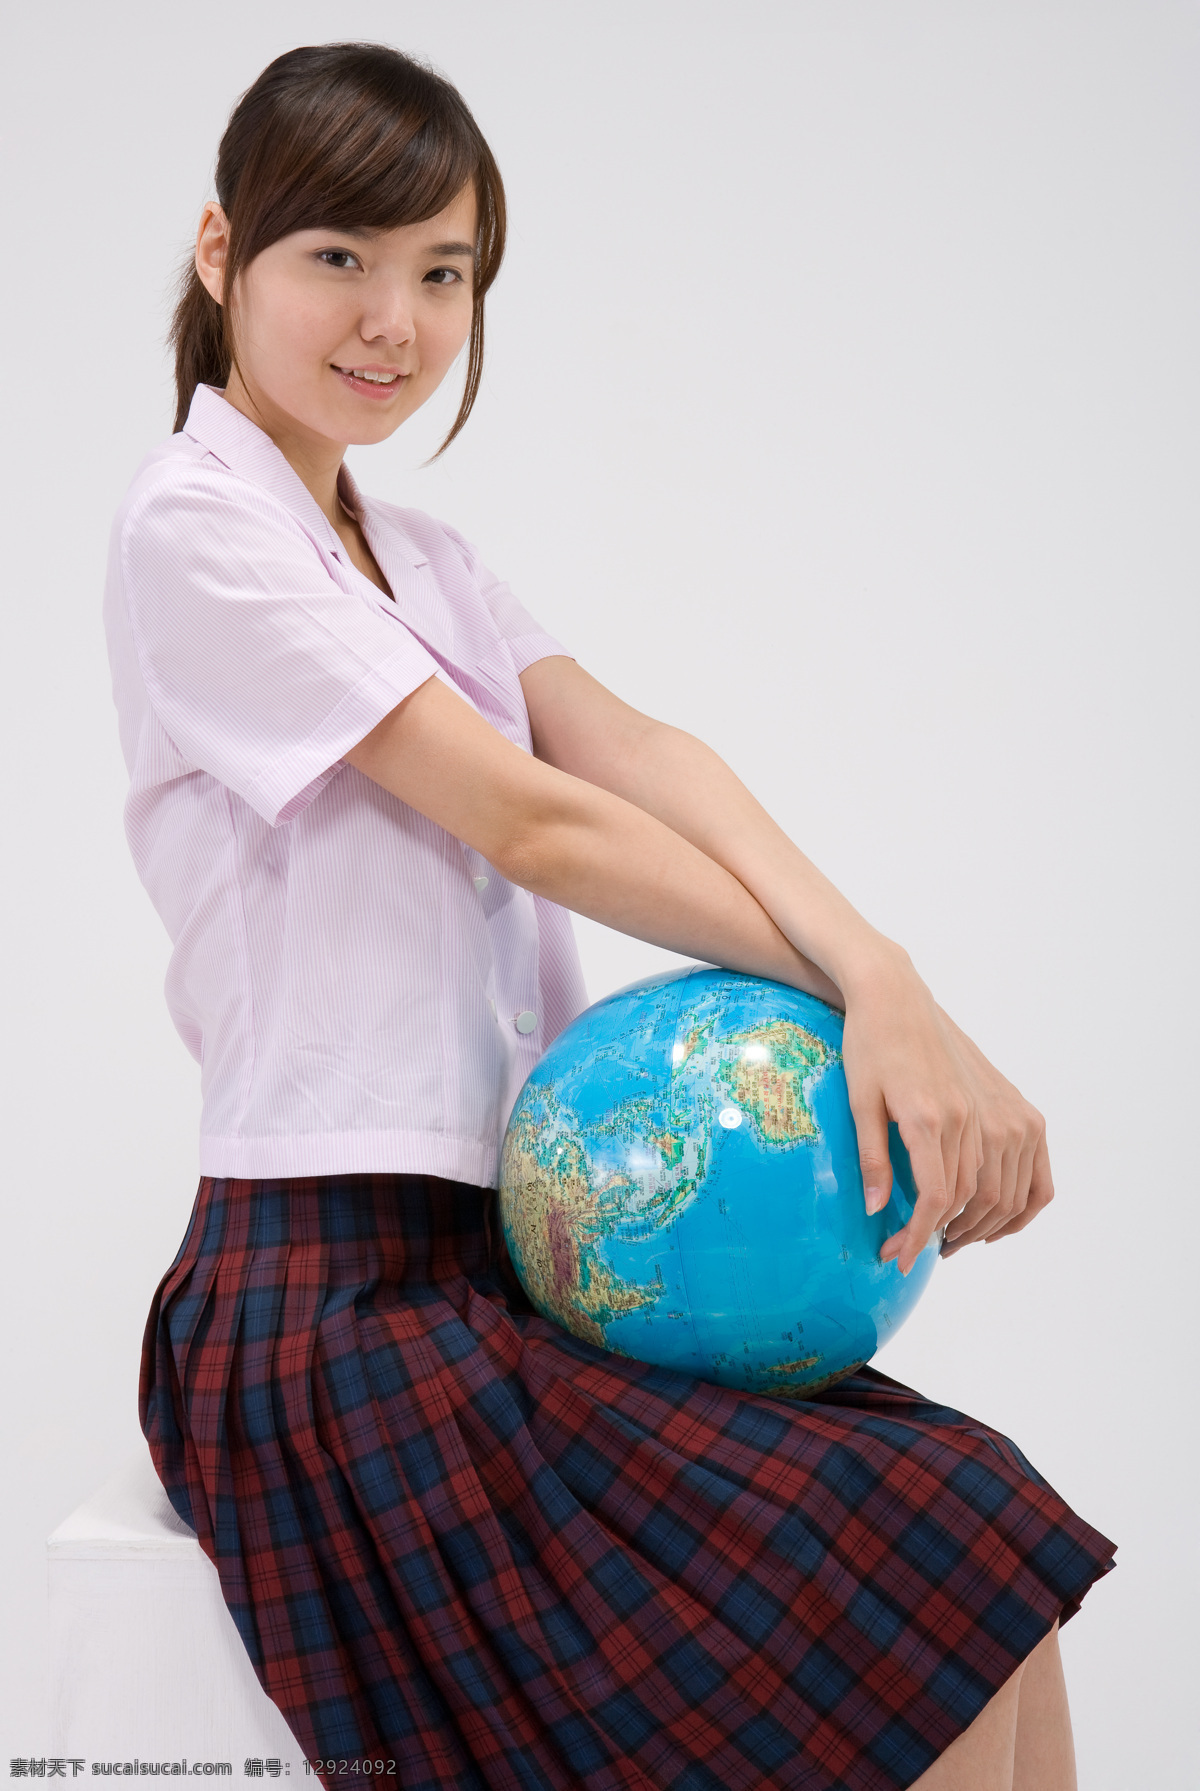 抱 地球仪 学生 女生 女孩 服装 学生服 坐着 地理 学习 表情 阳光 自信 微笑 开心 高清图片 地球图片 环境家居